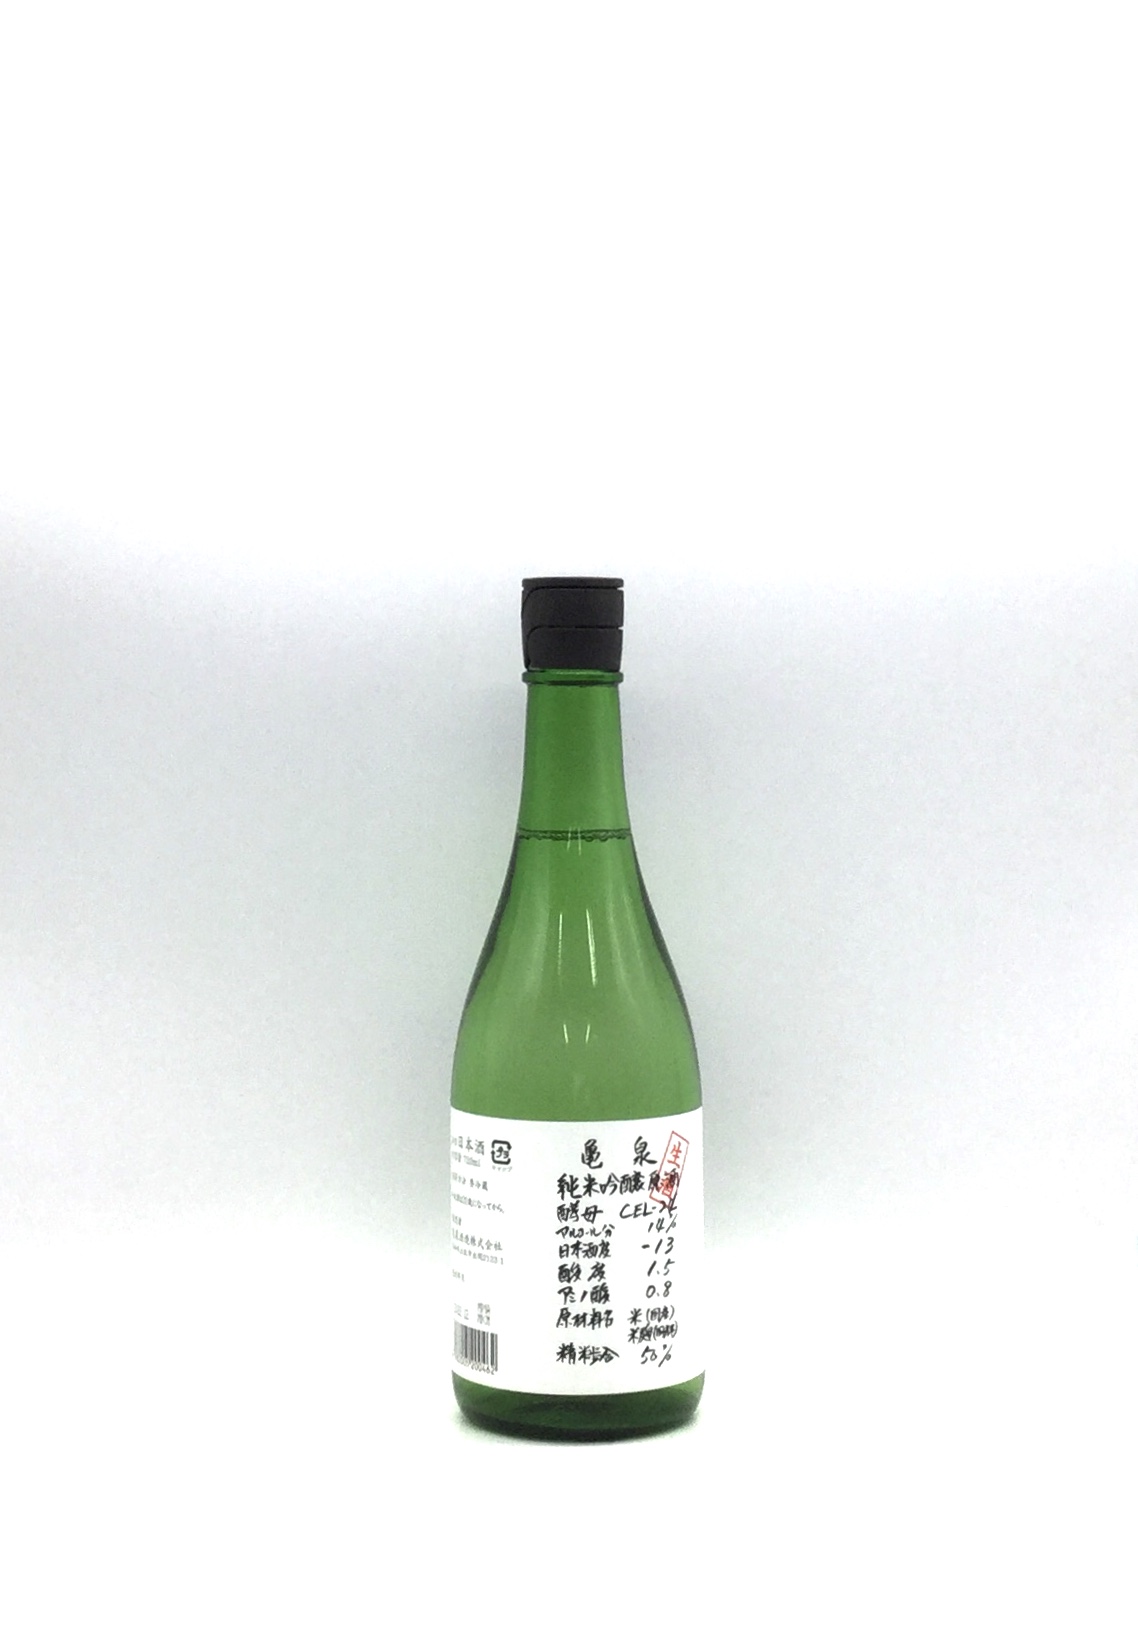 １着でも送料無料 日本酒 高知 亀泉酒造 純米吟醸 生原酒 CEL-24 720ml 甘口 セル フルーティ